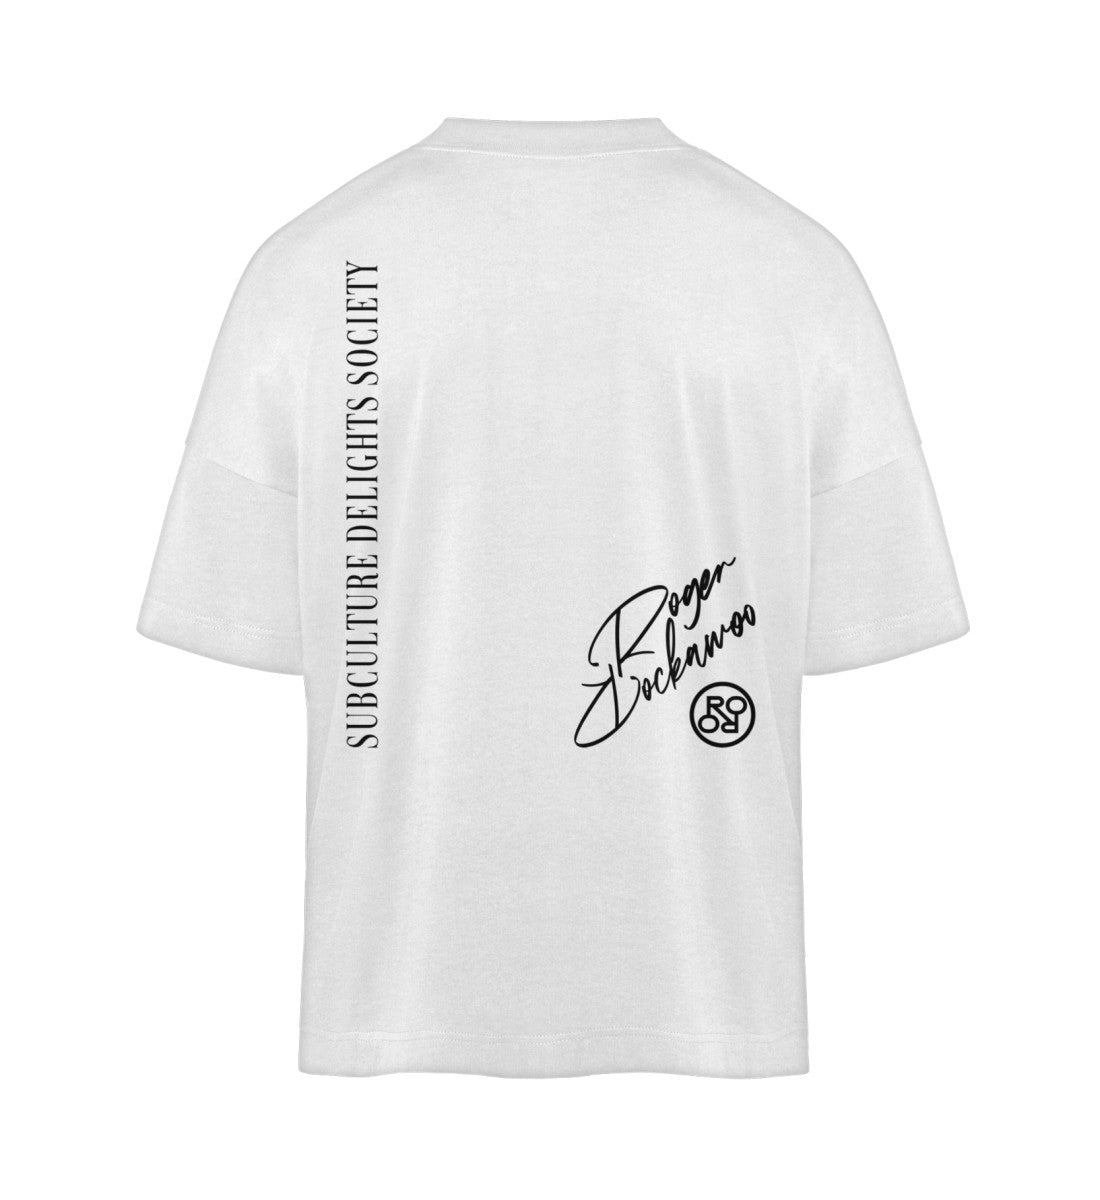 Weißes T-Shirt im Unisex Oversize Fit für Frauen und Männer bedruckt mit dem Design der Roger Rockawoo Kollektion no loitering